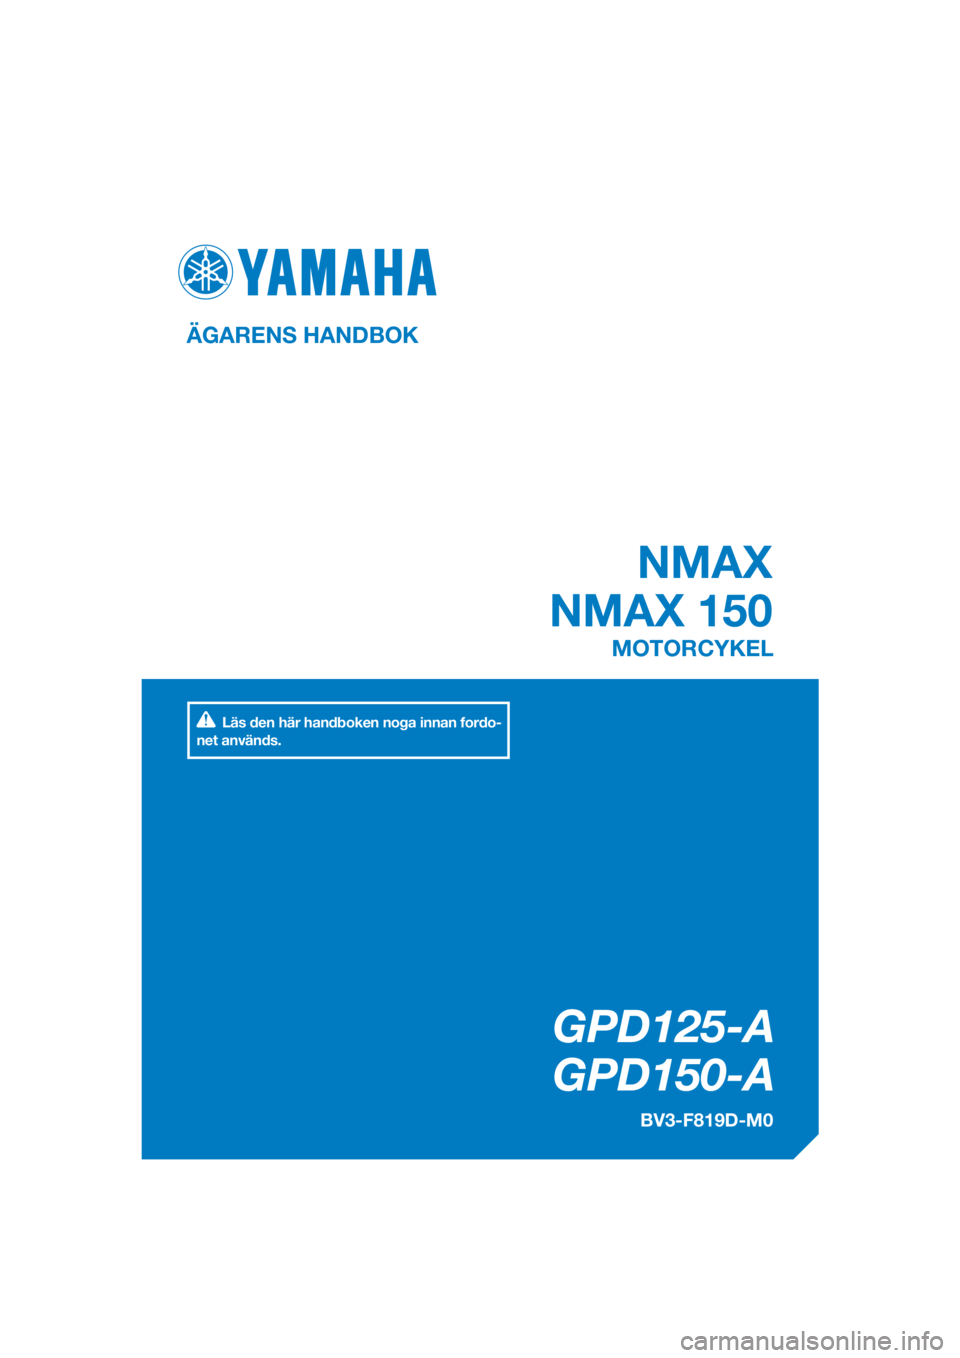 YAMAHA NMAX 150 2018  Bruksanvisningar (in Swedish) DIC183
GPD125-A
   GPD150-A
 NMAX
NMAX 150
ÄGARENS HANDBOK
BV3-F819D-M0
MOTORCYKEL
[Swedish  (M)]
Läs den här handboken noga innan fordo-
net används. 